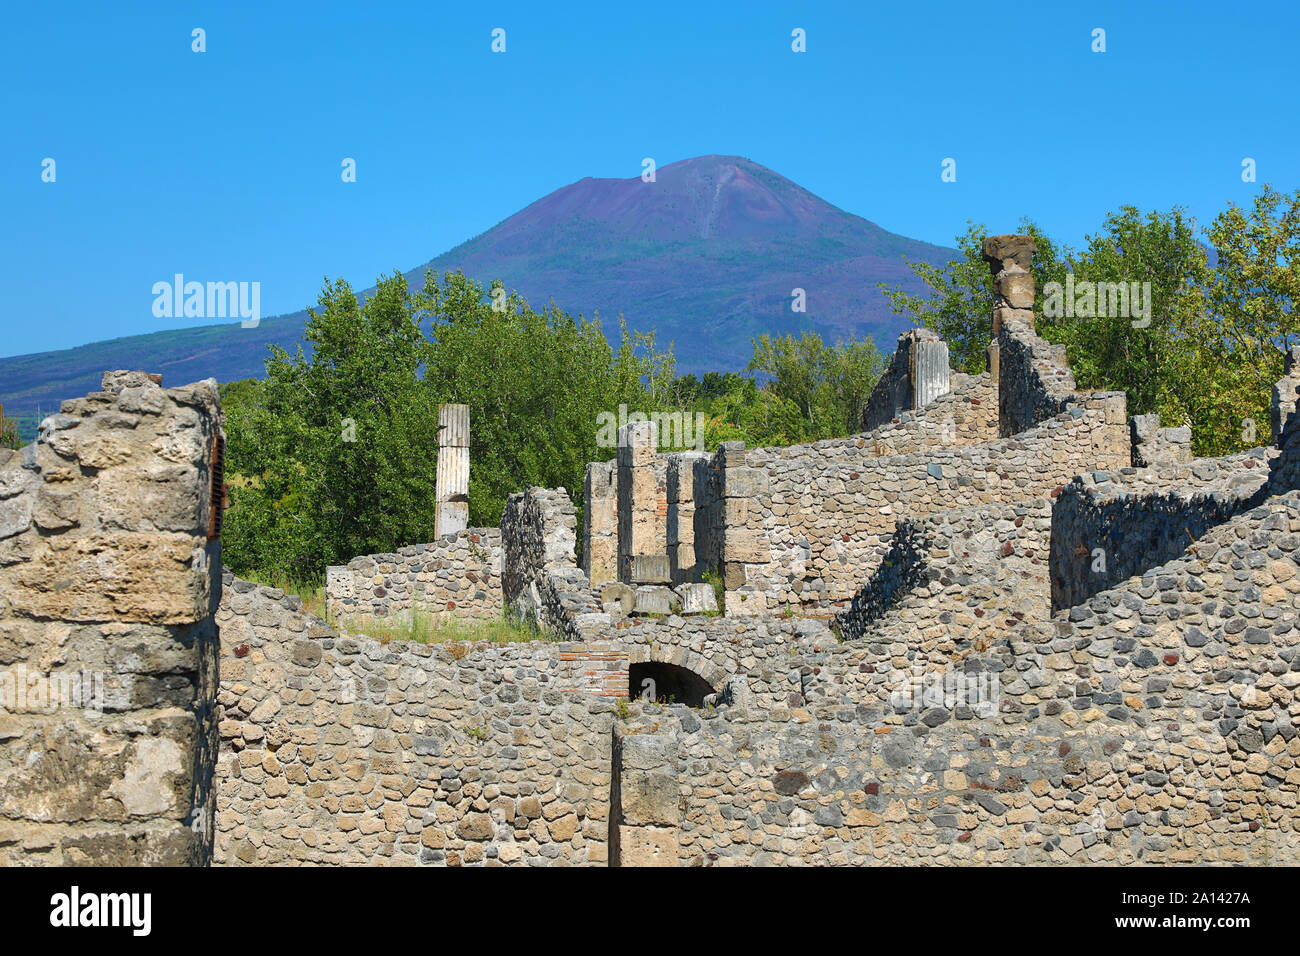 Ruines de l'ancienne ville romaine de Pompéi et le Vésuve, Italie Banque D'Images